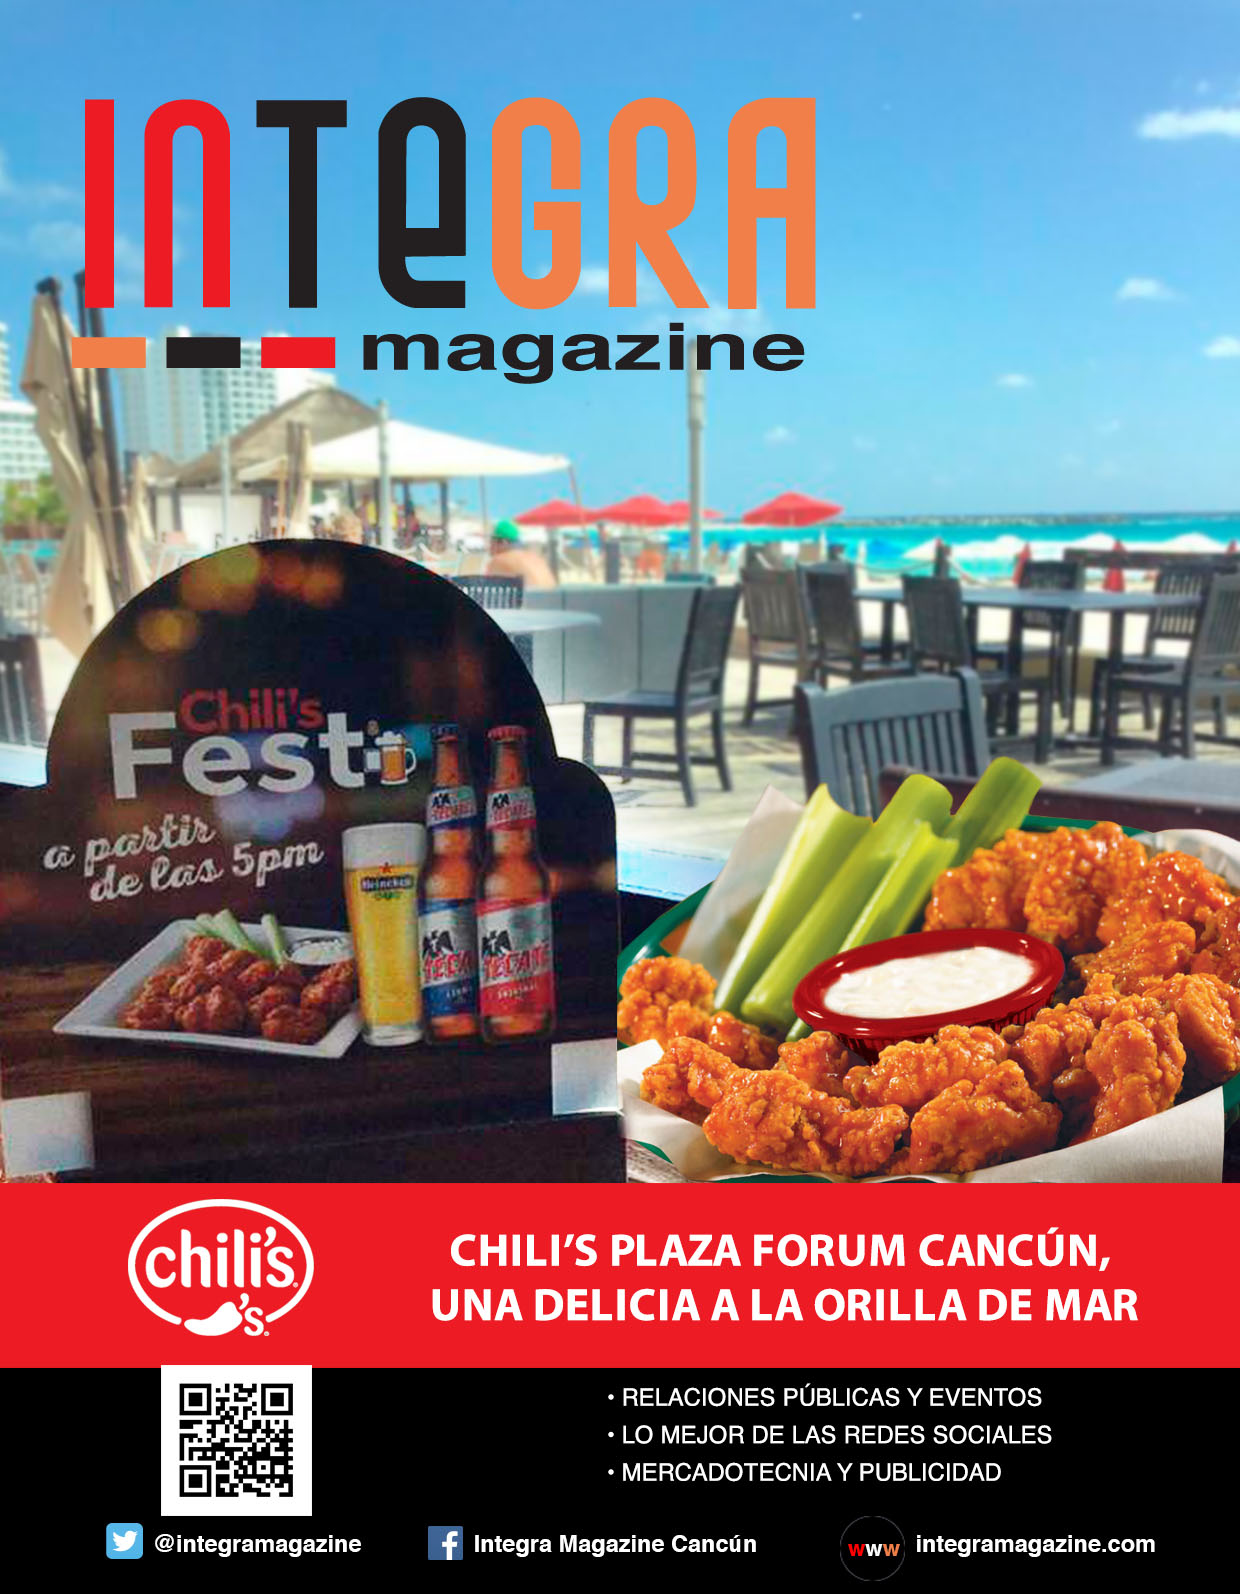 Chili’s Plaza Forum Cancún, una delicia a la orilla del mar